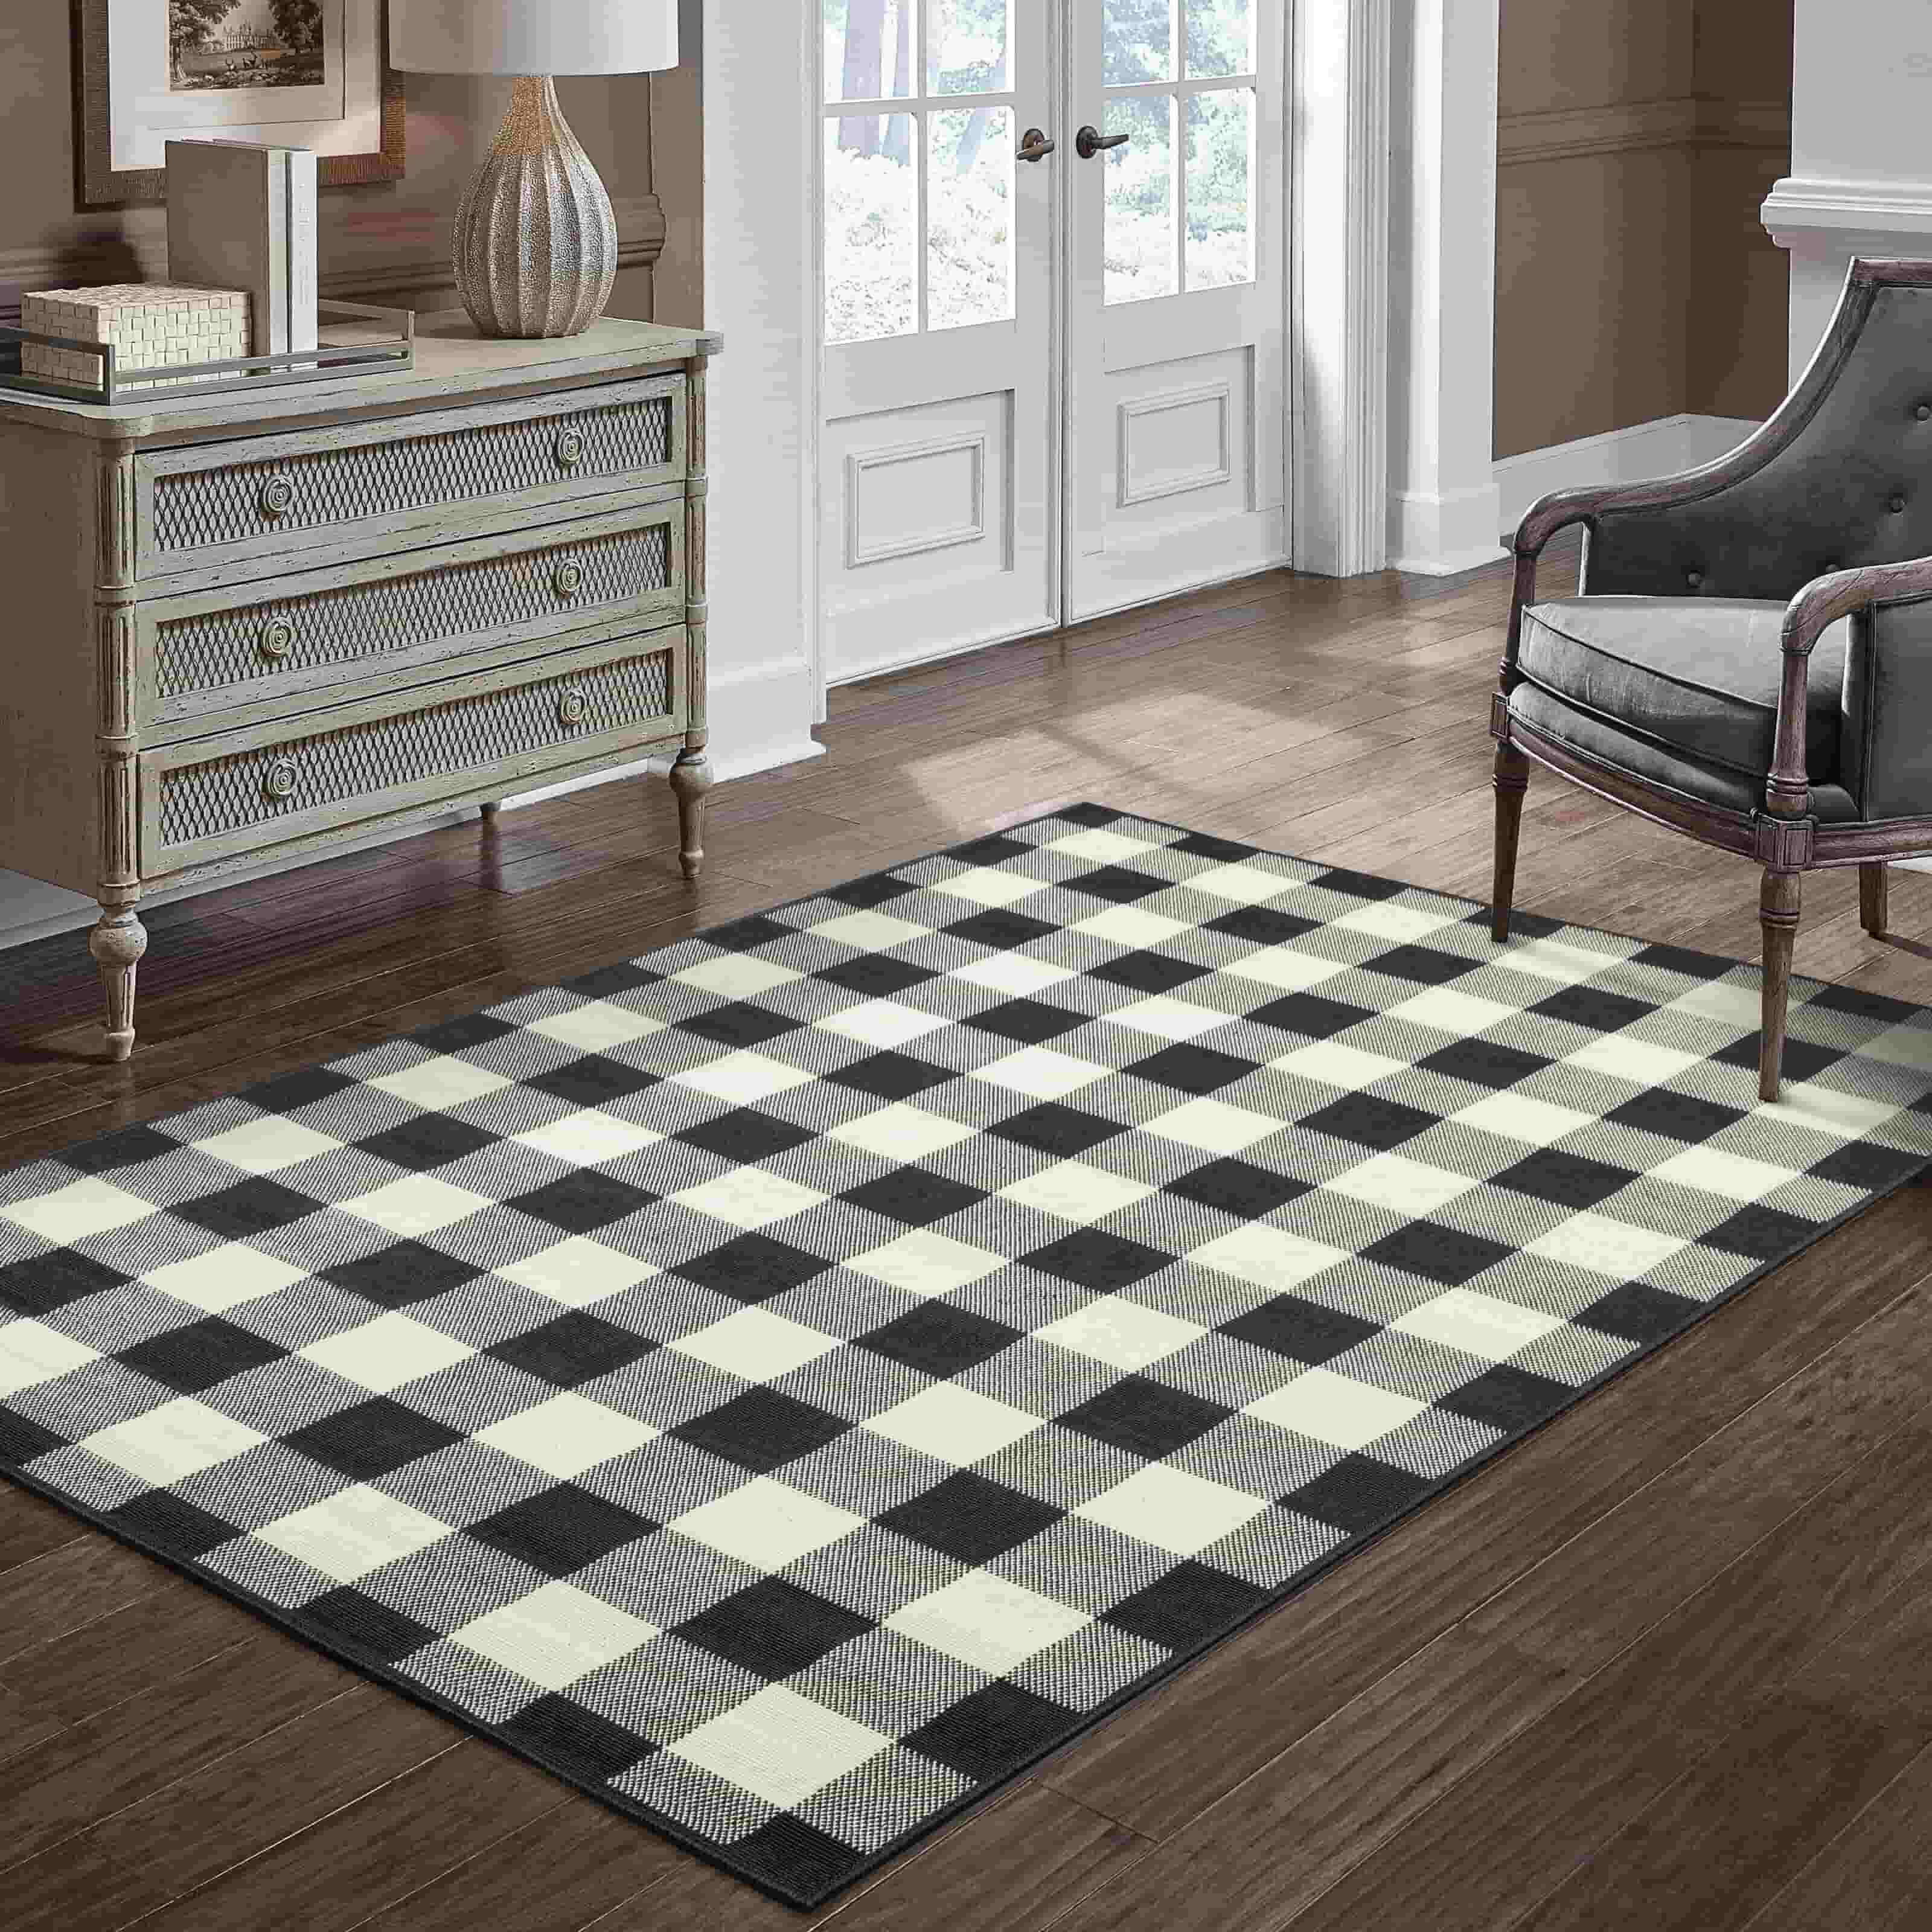 rug carpet design